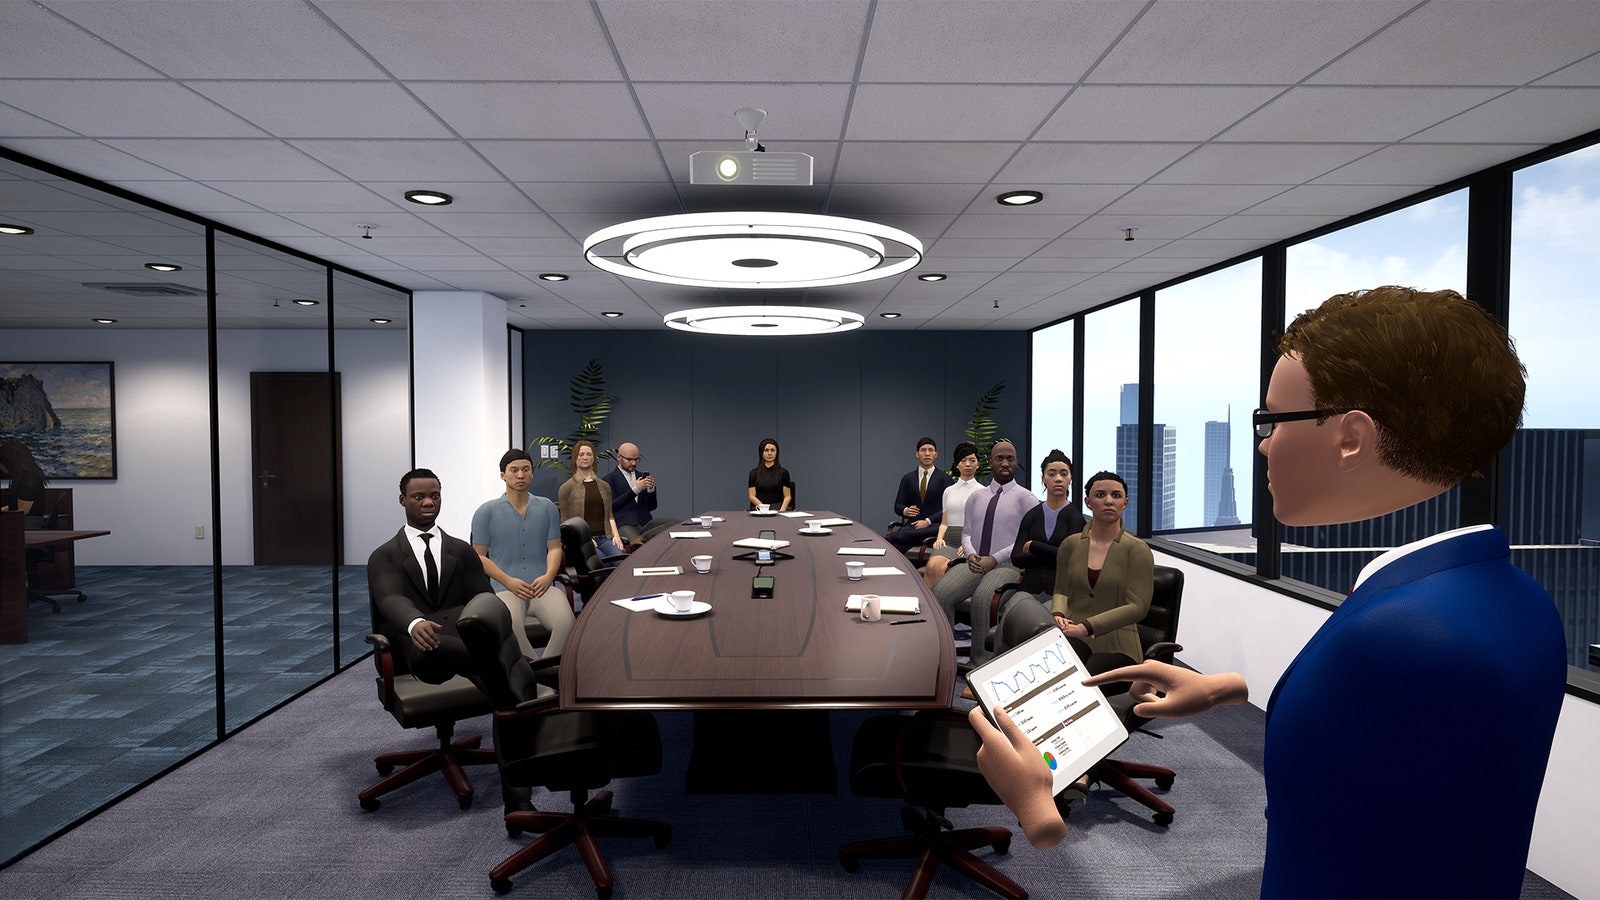 نرم افزار برگزاری جلسات بر مبنای VR